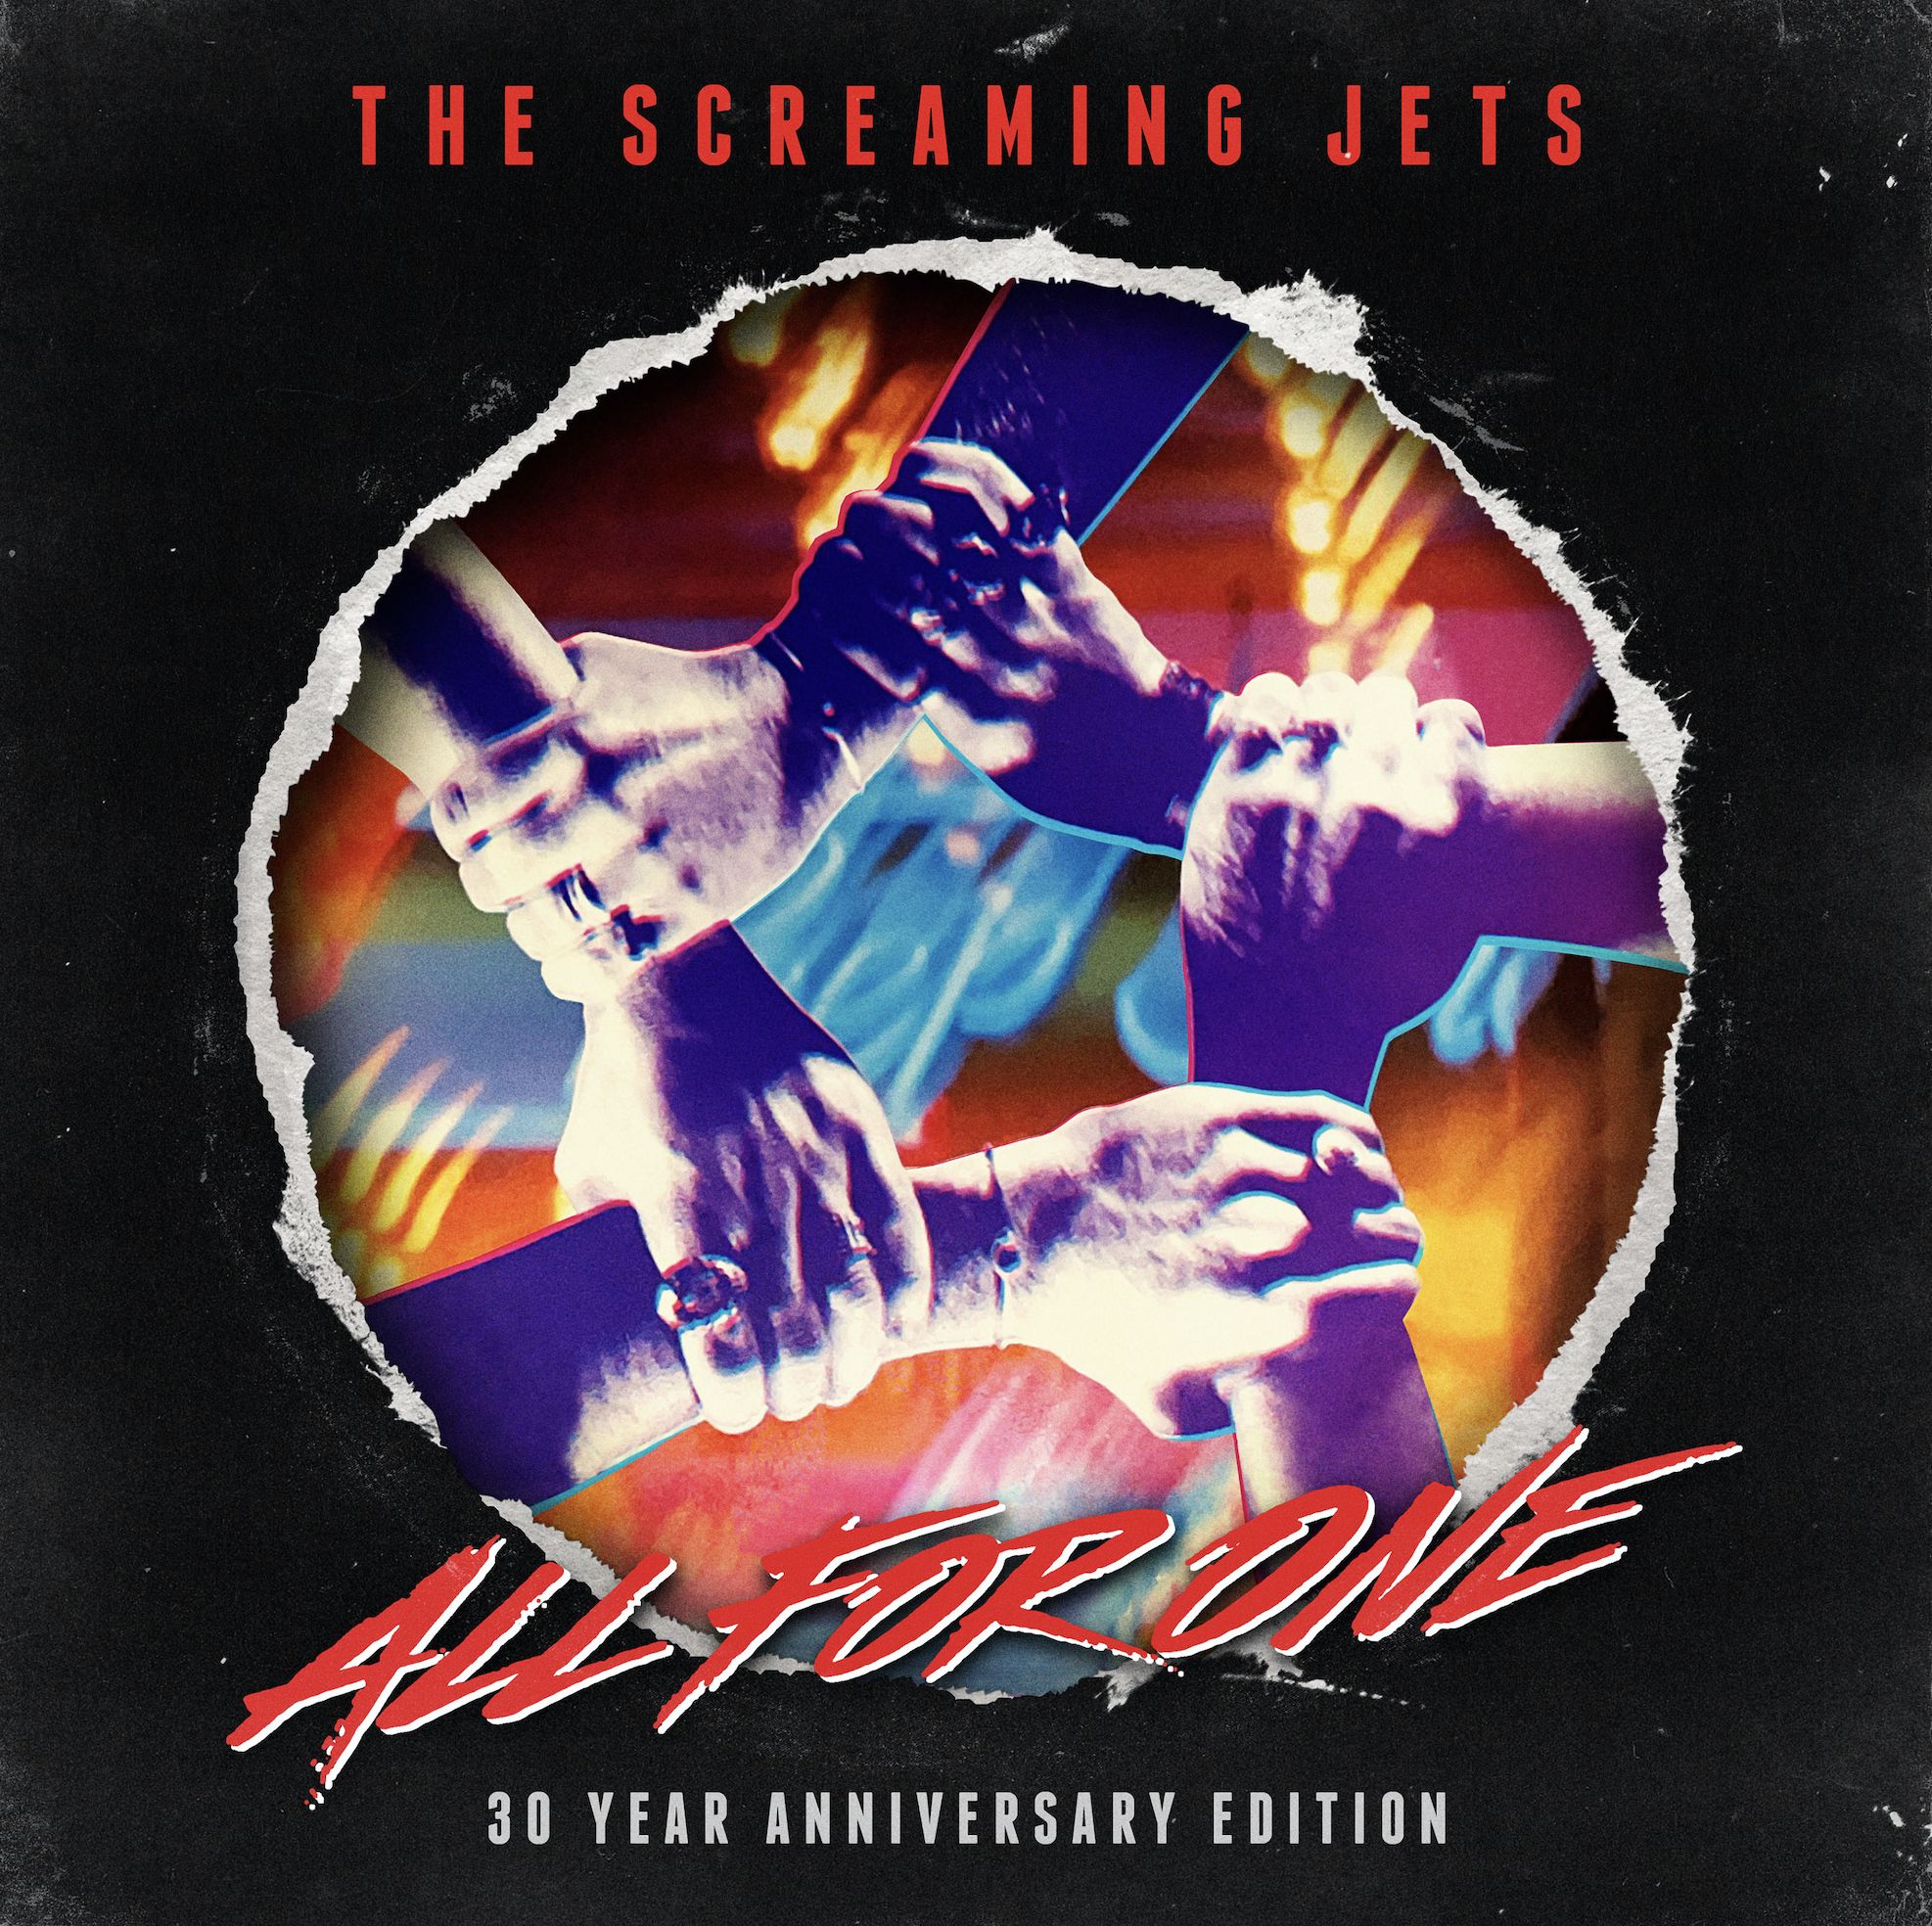 The Screaming Jets - 30 Years Anniversary Album